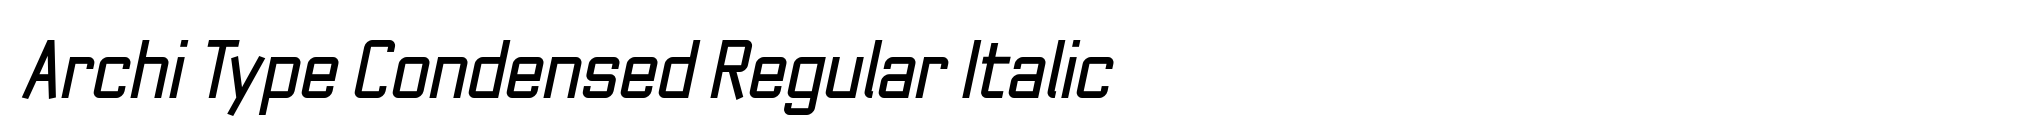 Archi Type Condensed Regular Italic image